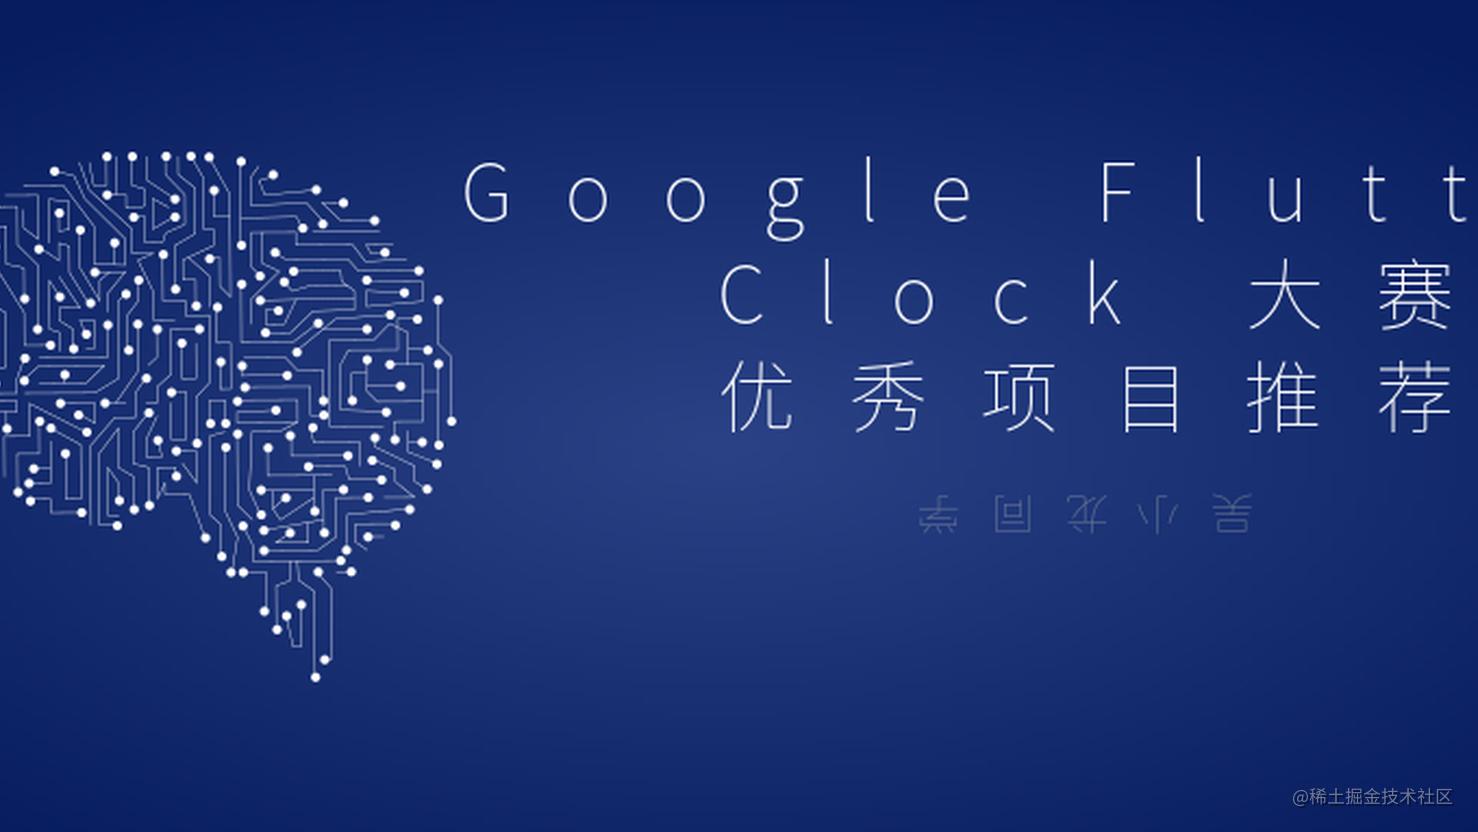 Google Flutter Clock 大赛优秀项目推荐